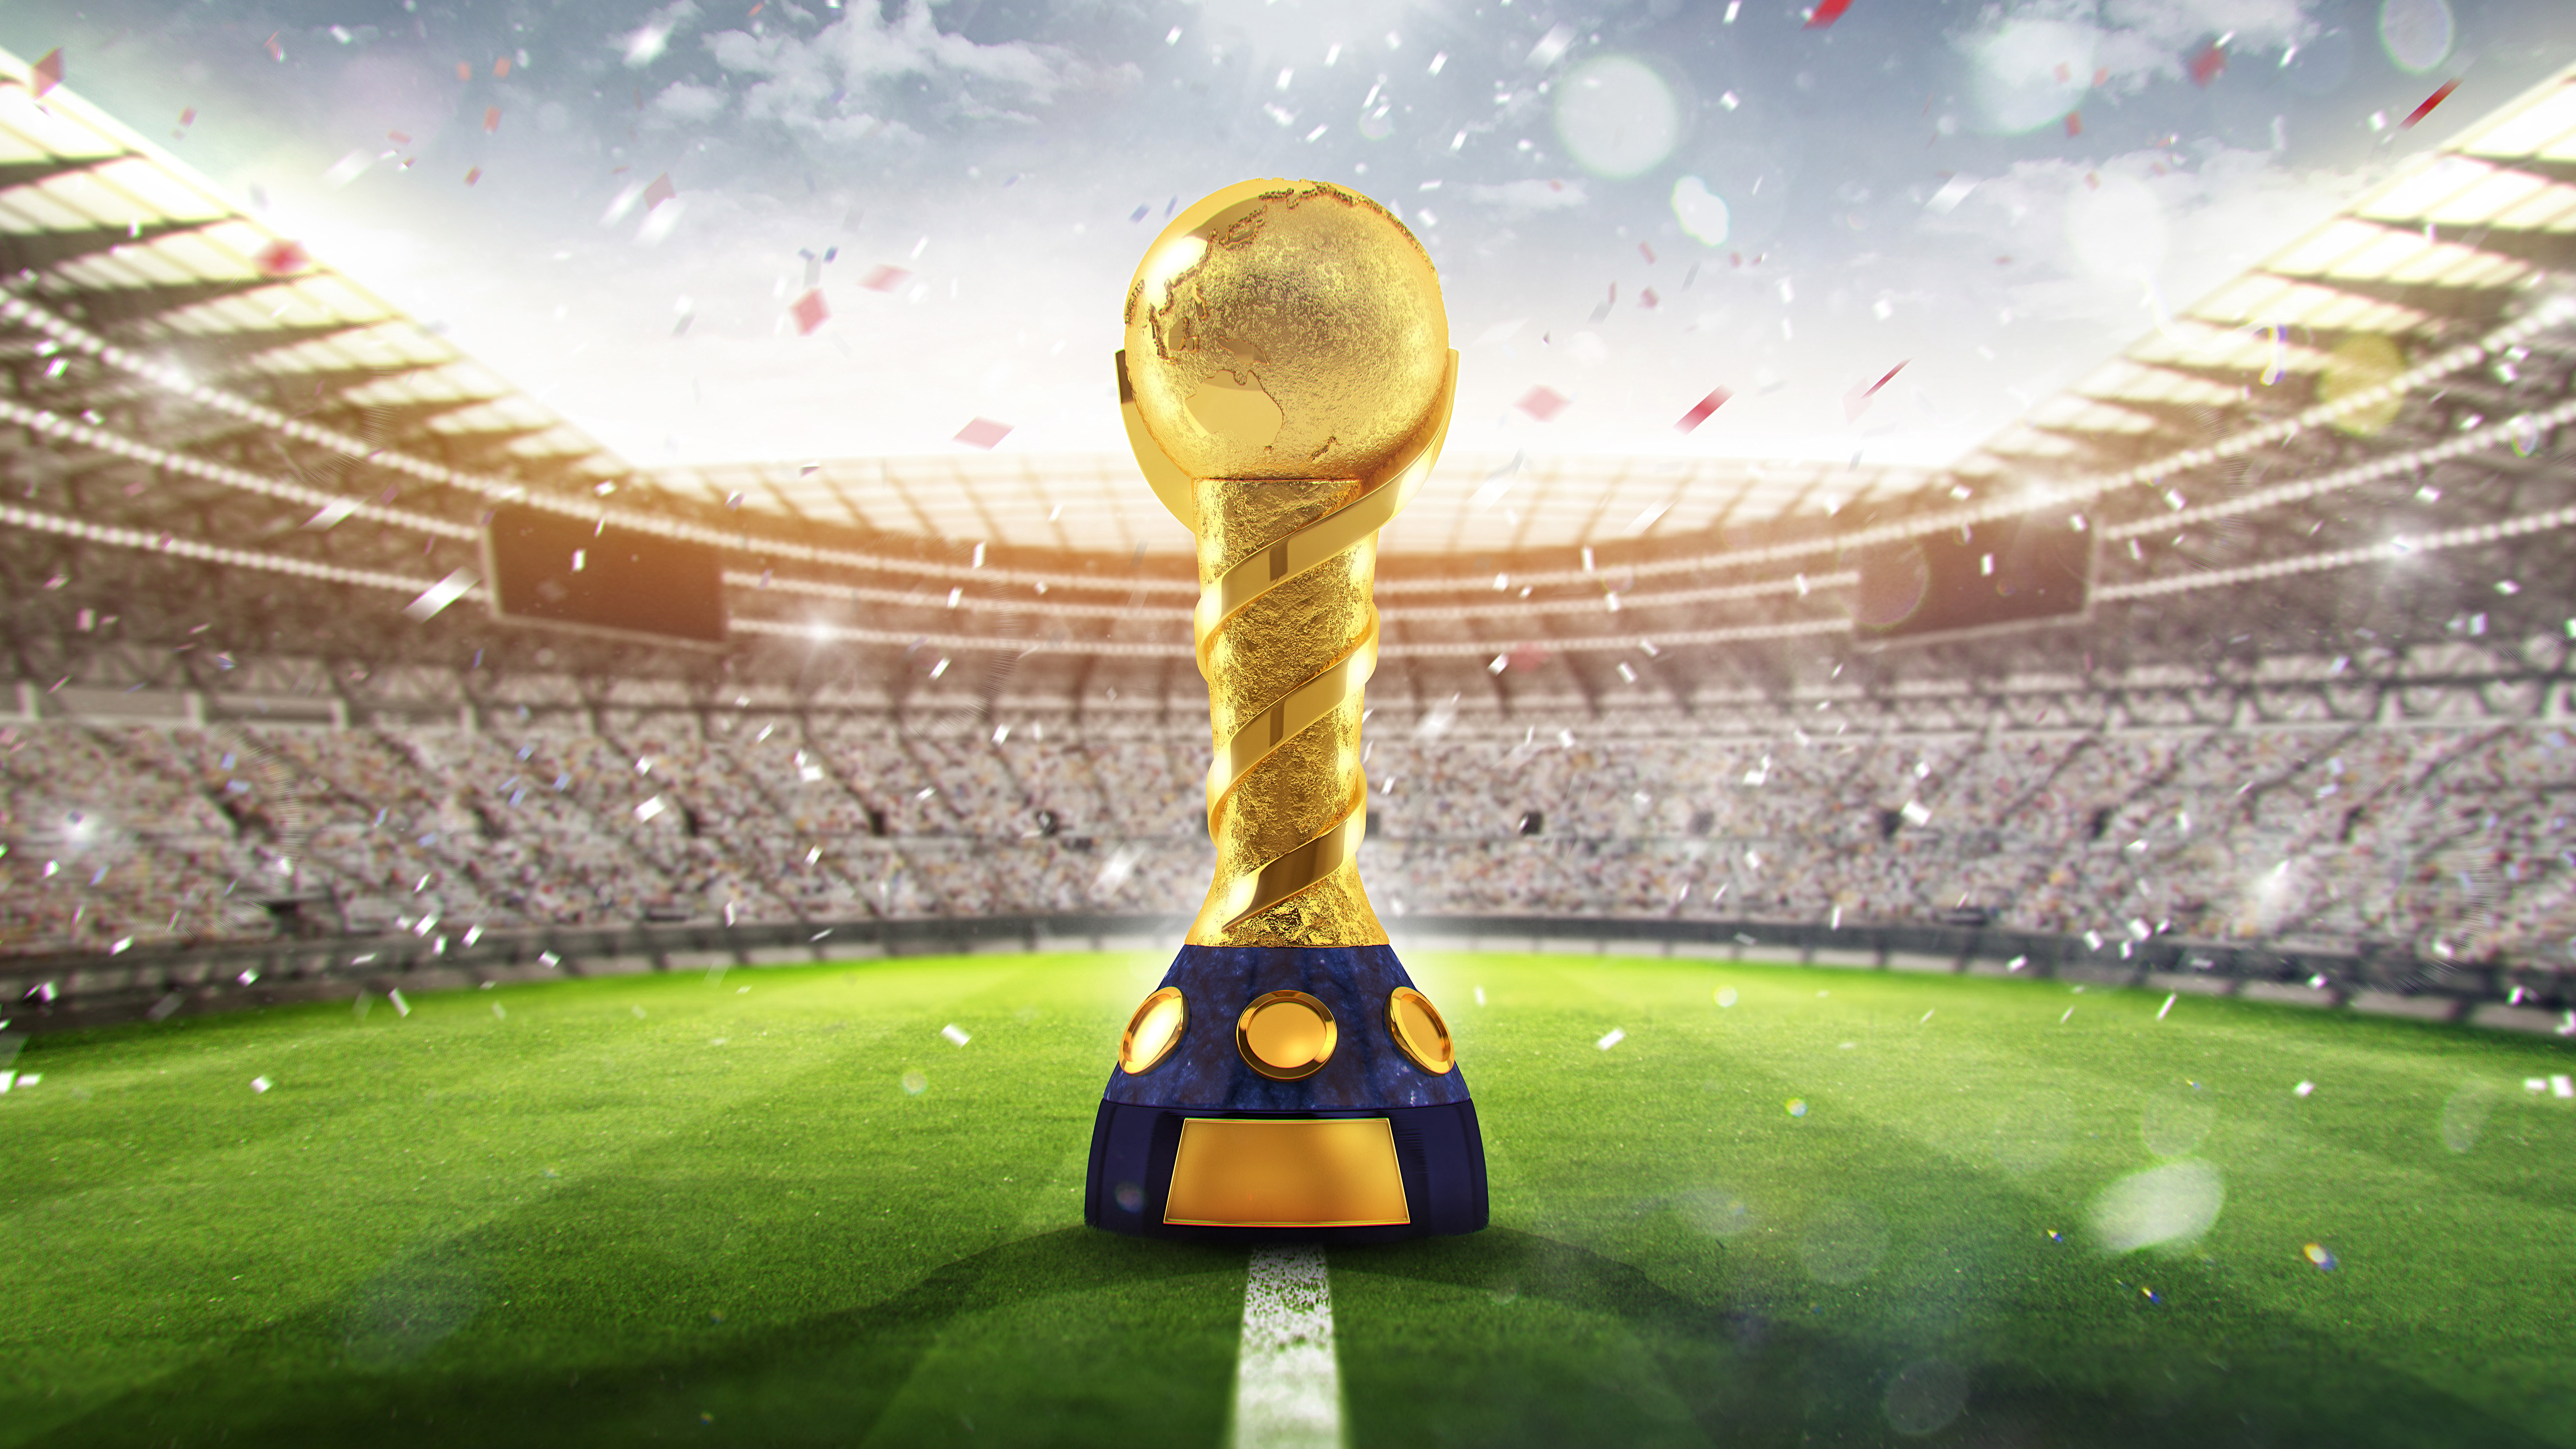 fond d'écran coupe du monde de la fifa,stade,football,trophée,stade spécifique au football,super bowl